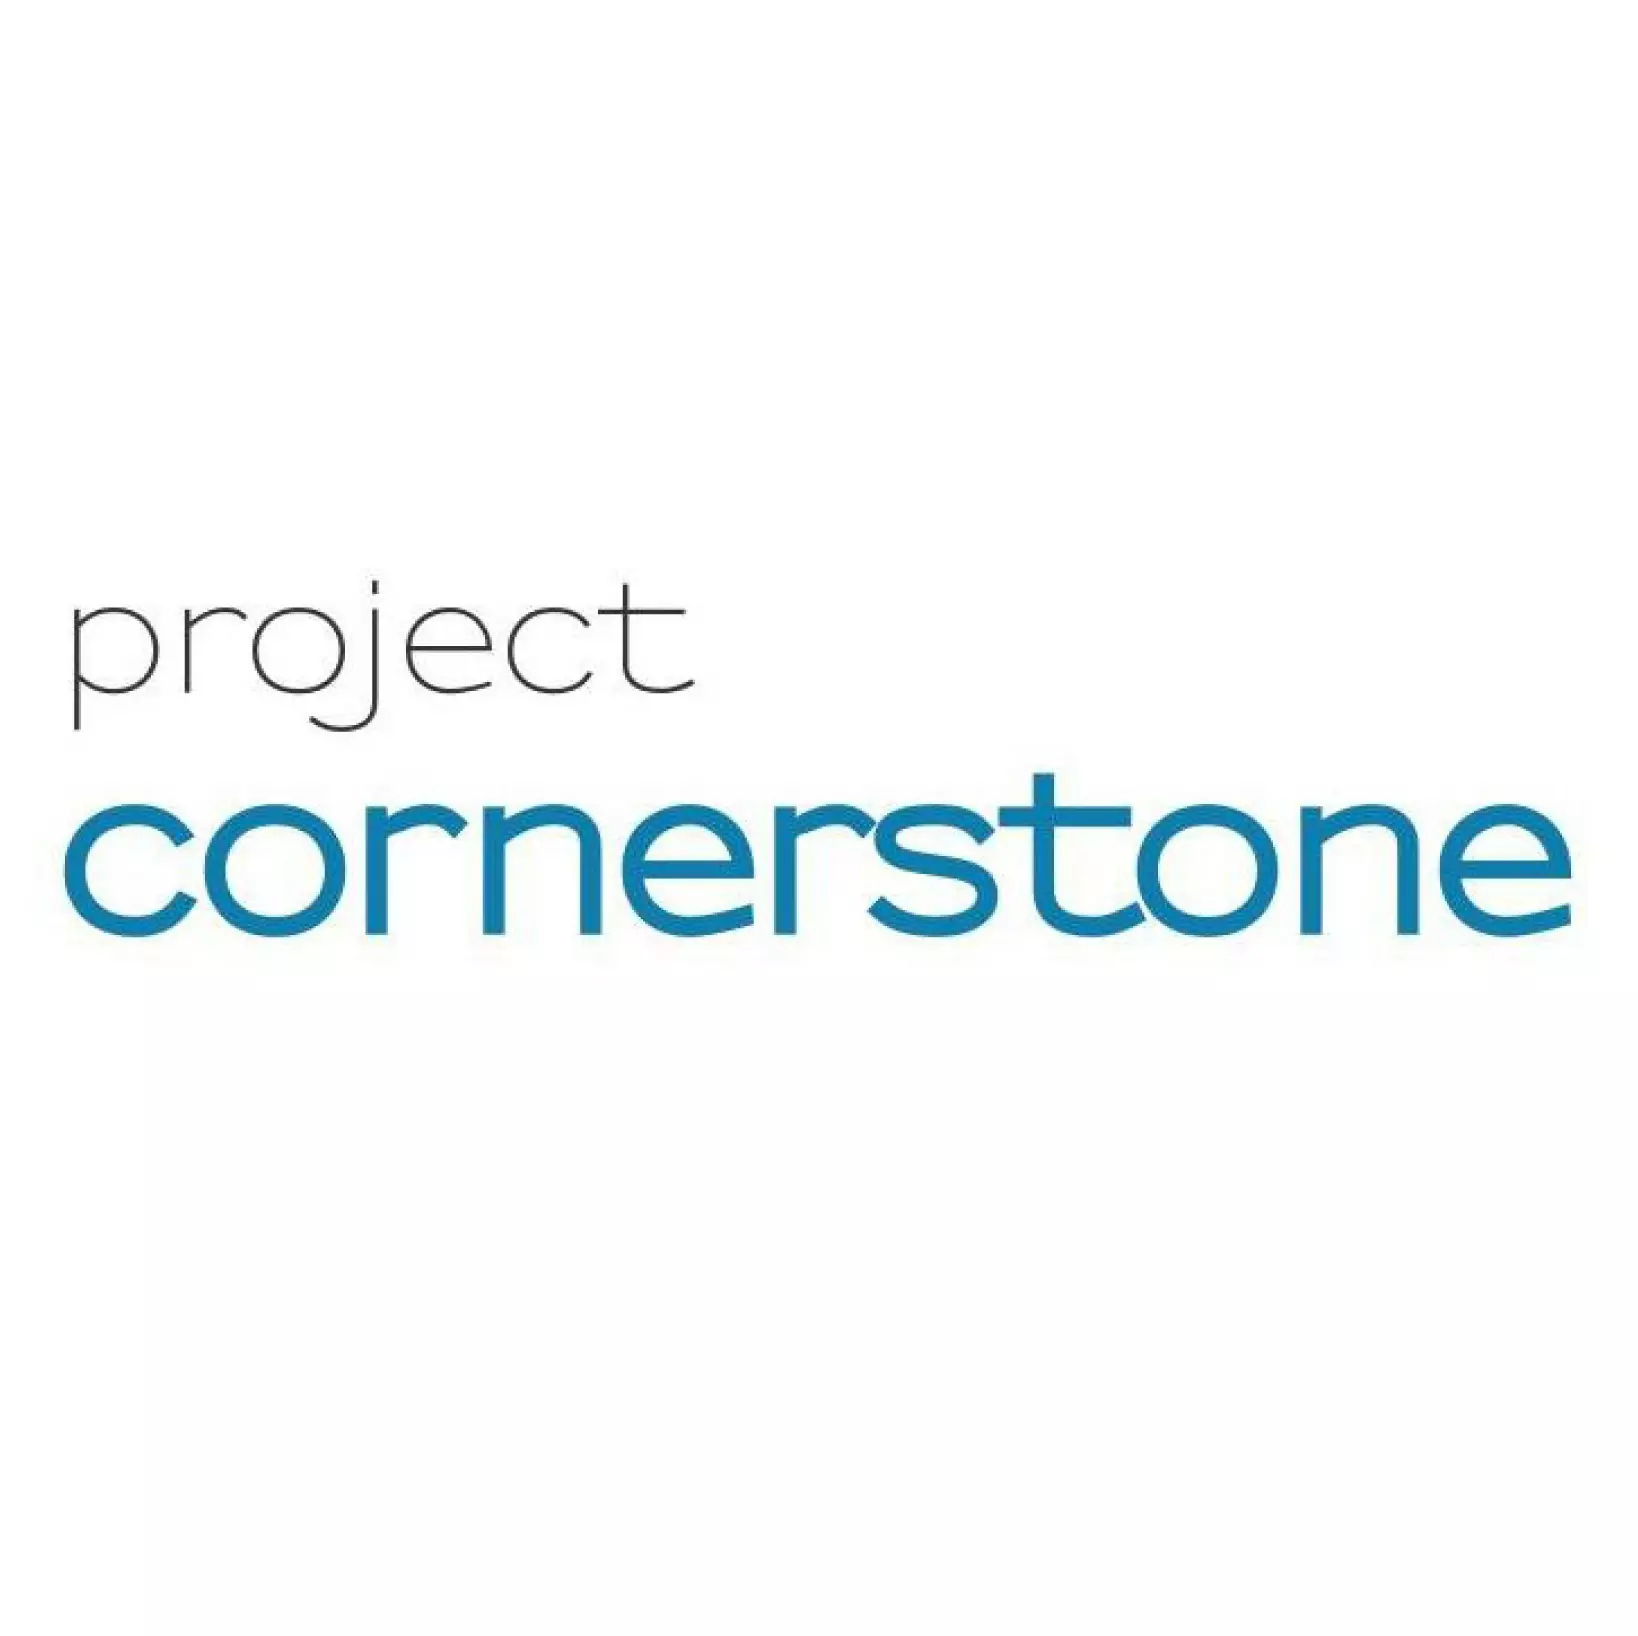 project cornerstone square logo